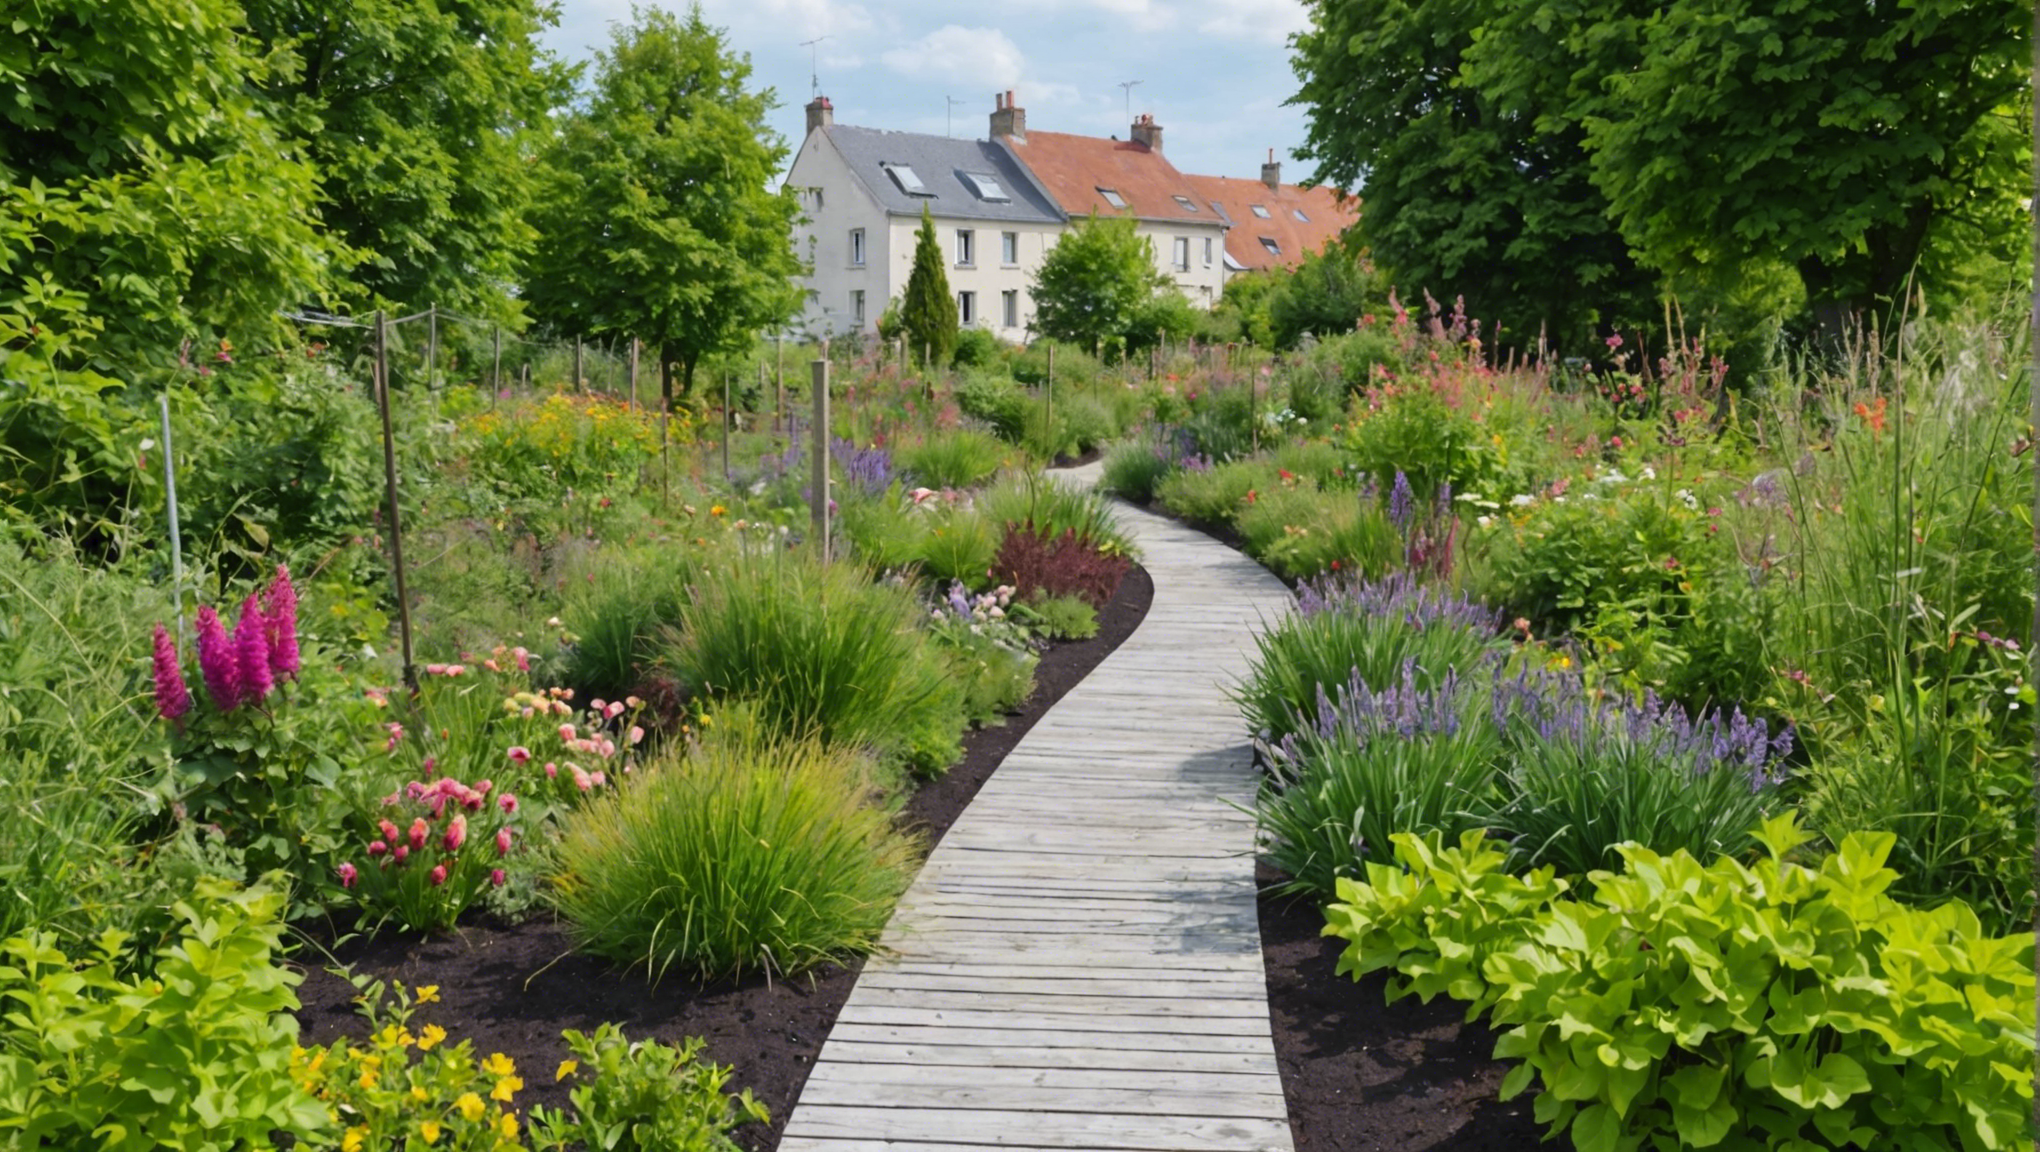 découvrez comment transformer votre jardin en un havre de paix et de biodiversité grâce à nos conseils pratiques pour favoriser la biodiversité et le bien-être dans votre espace extérieur.